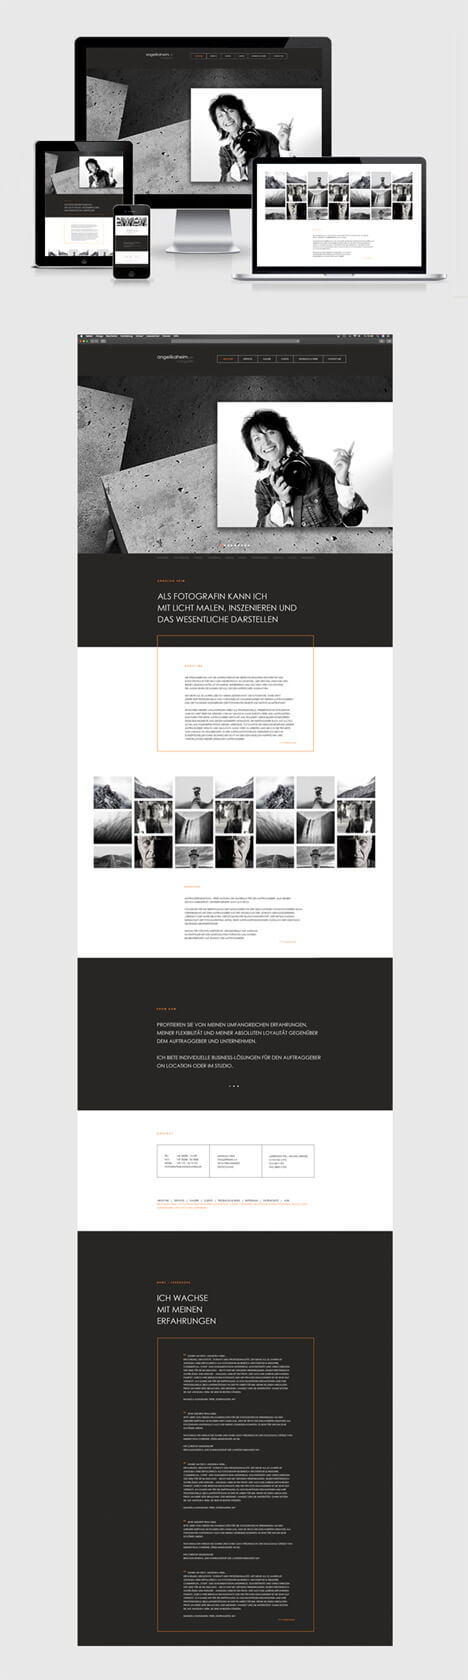 angelika heim fotografin: Entwicklung CI, Konzeption & Layout Webseite mit Responsive Design